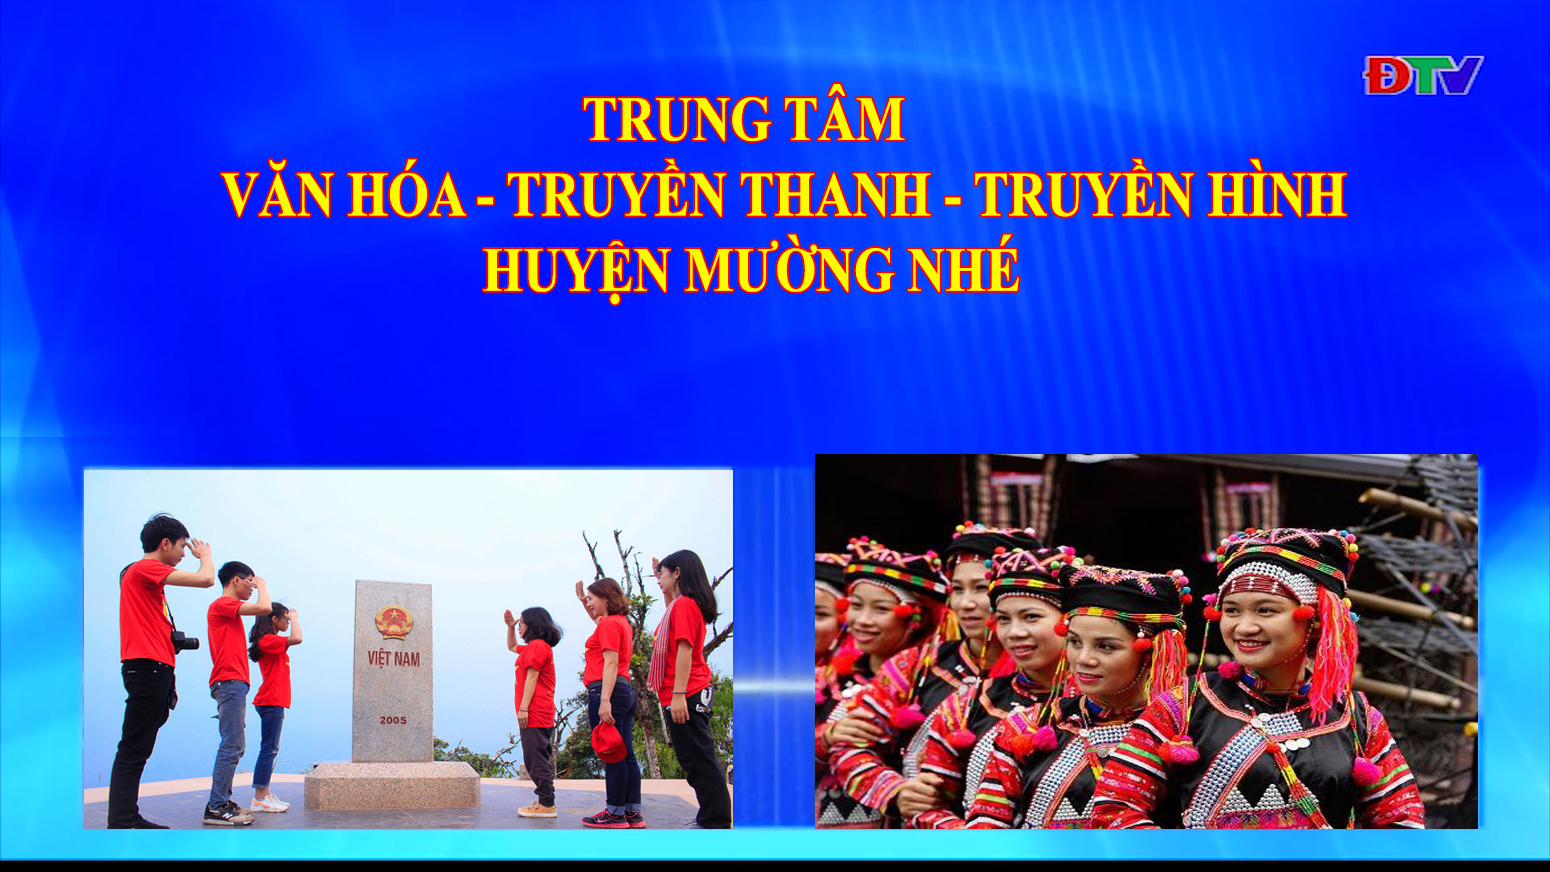 Trung tâm Văn hóa Truyền thanh Truyền hình huyện Mường Nhé (Ngày 20-8-2020)